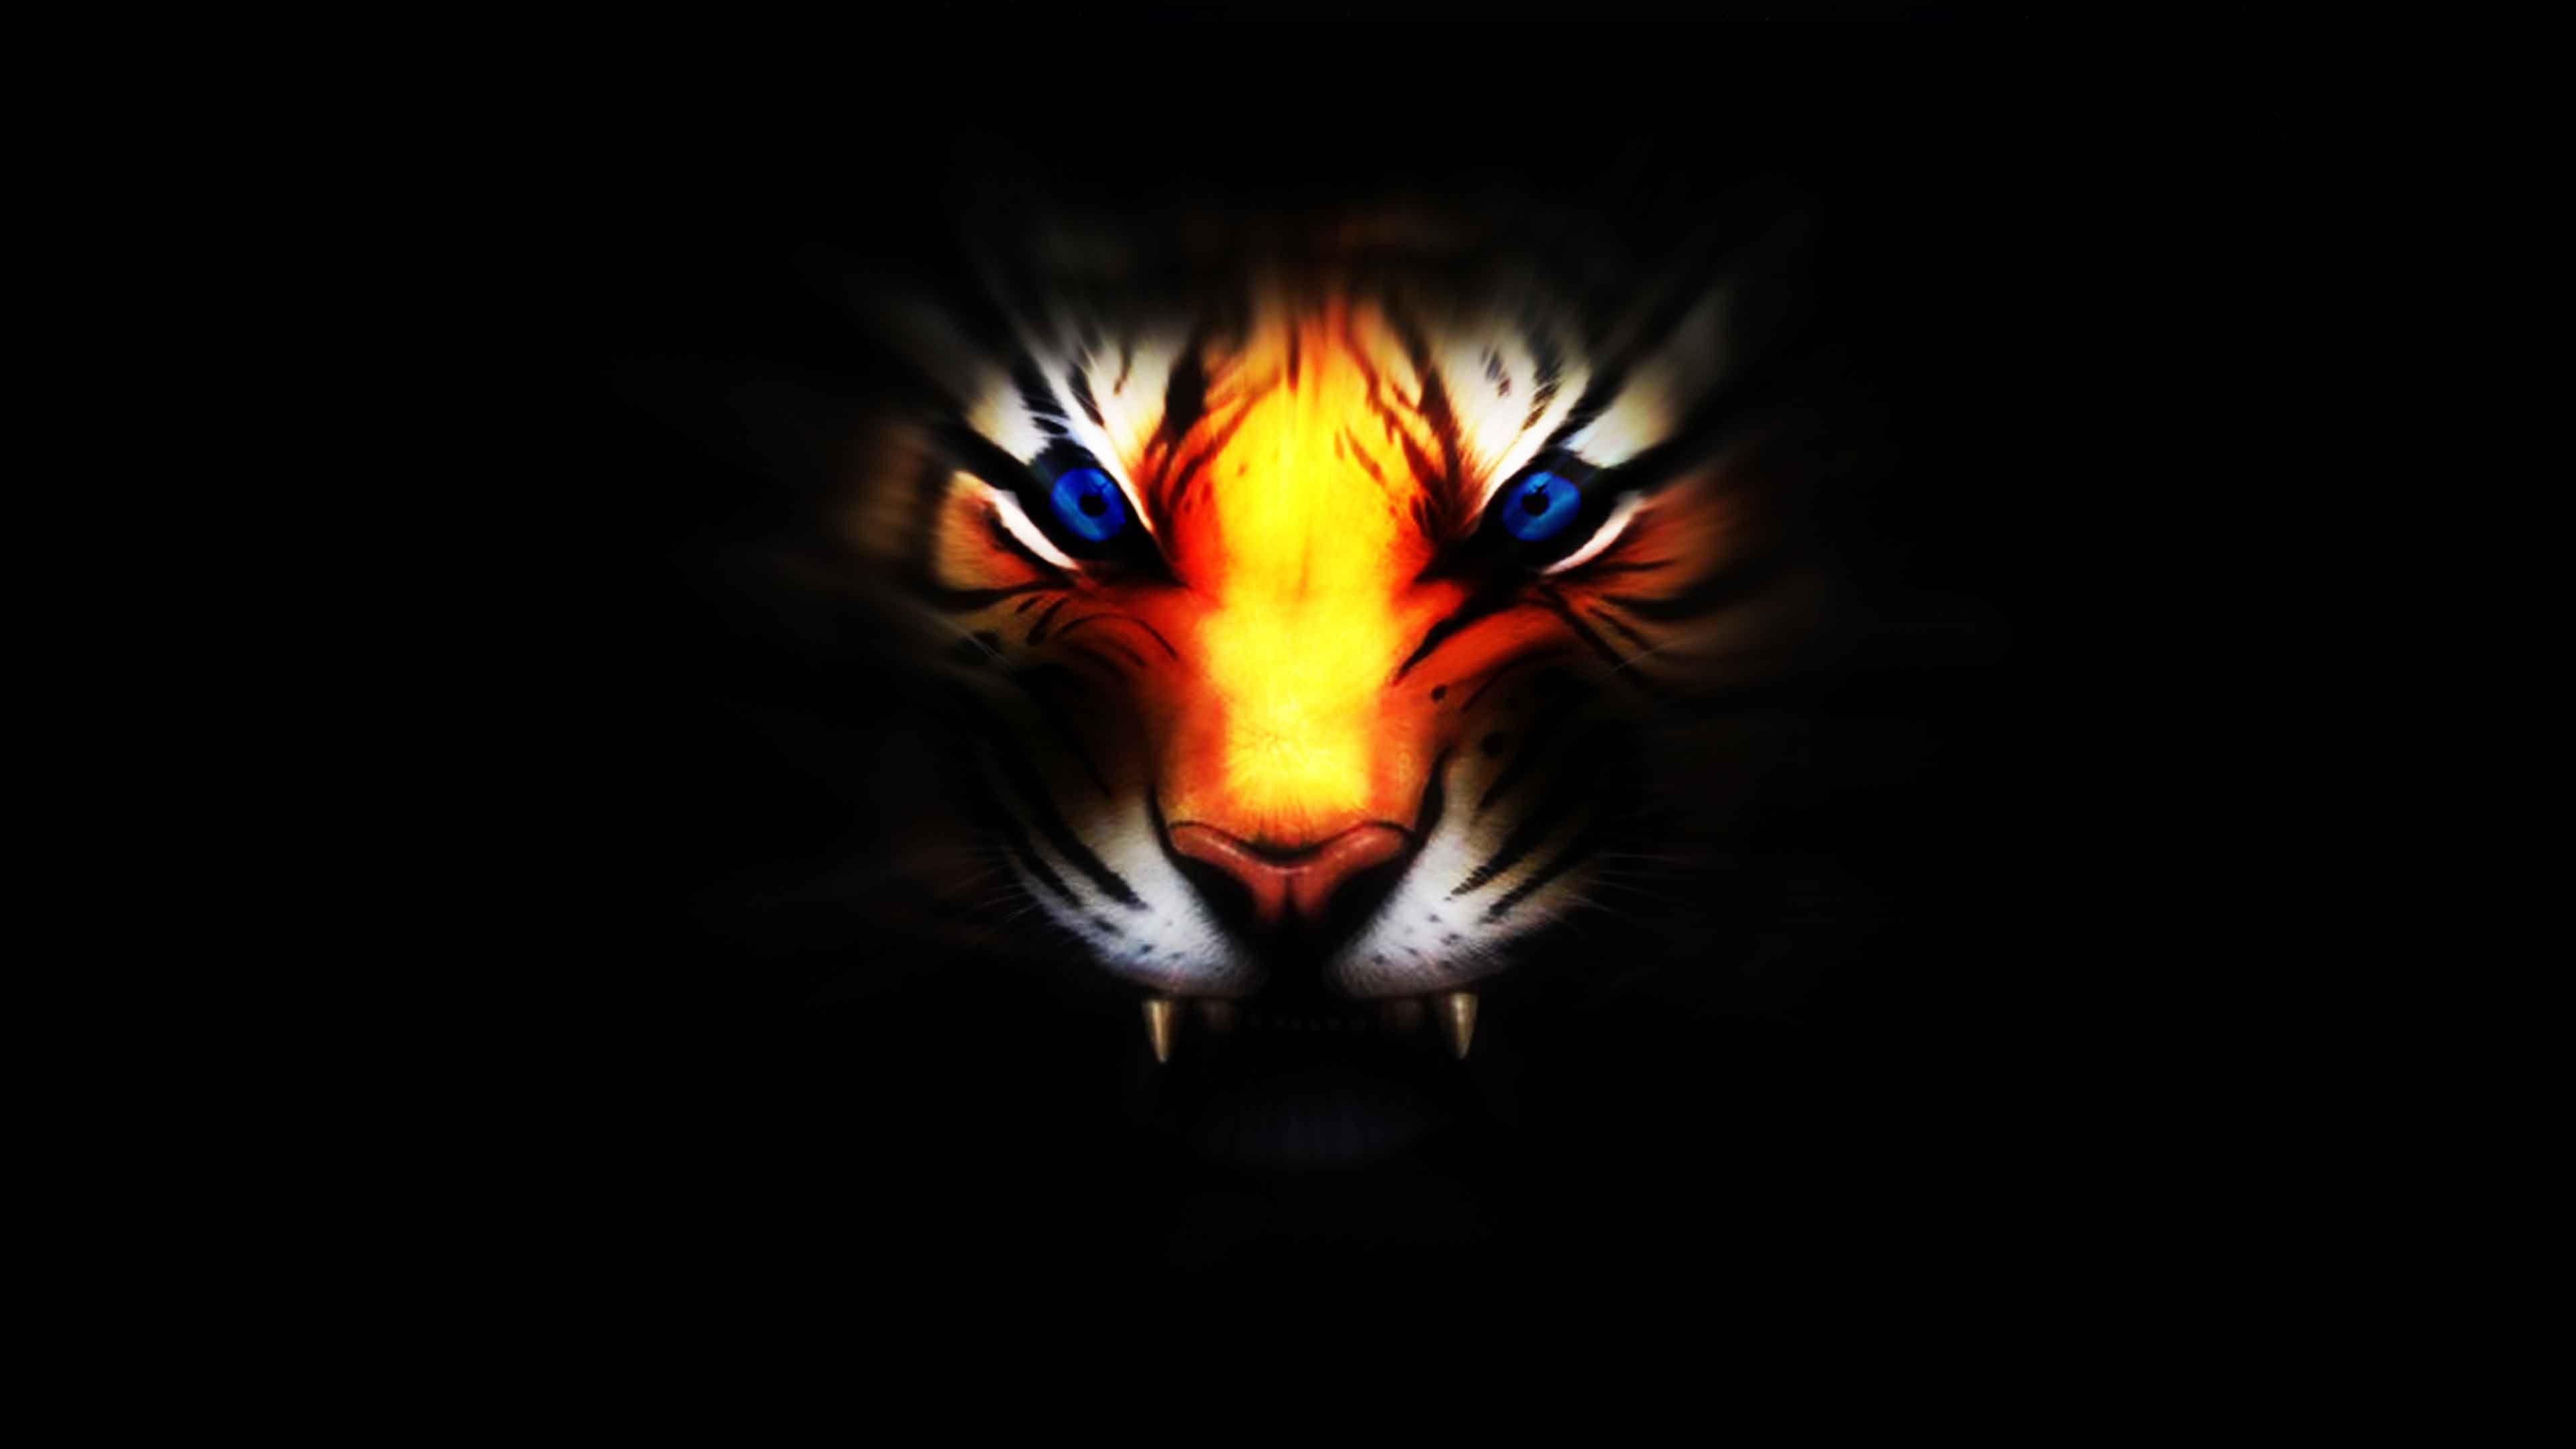 Cool 3D Tiger Wallpaper .com